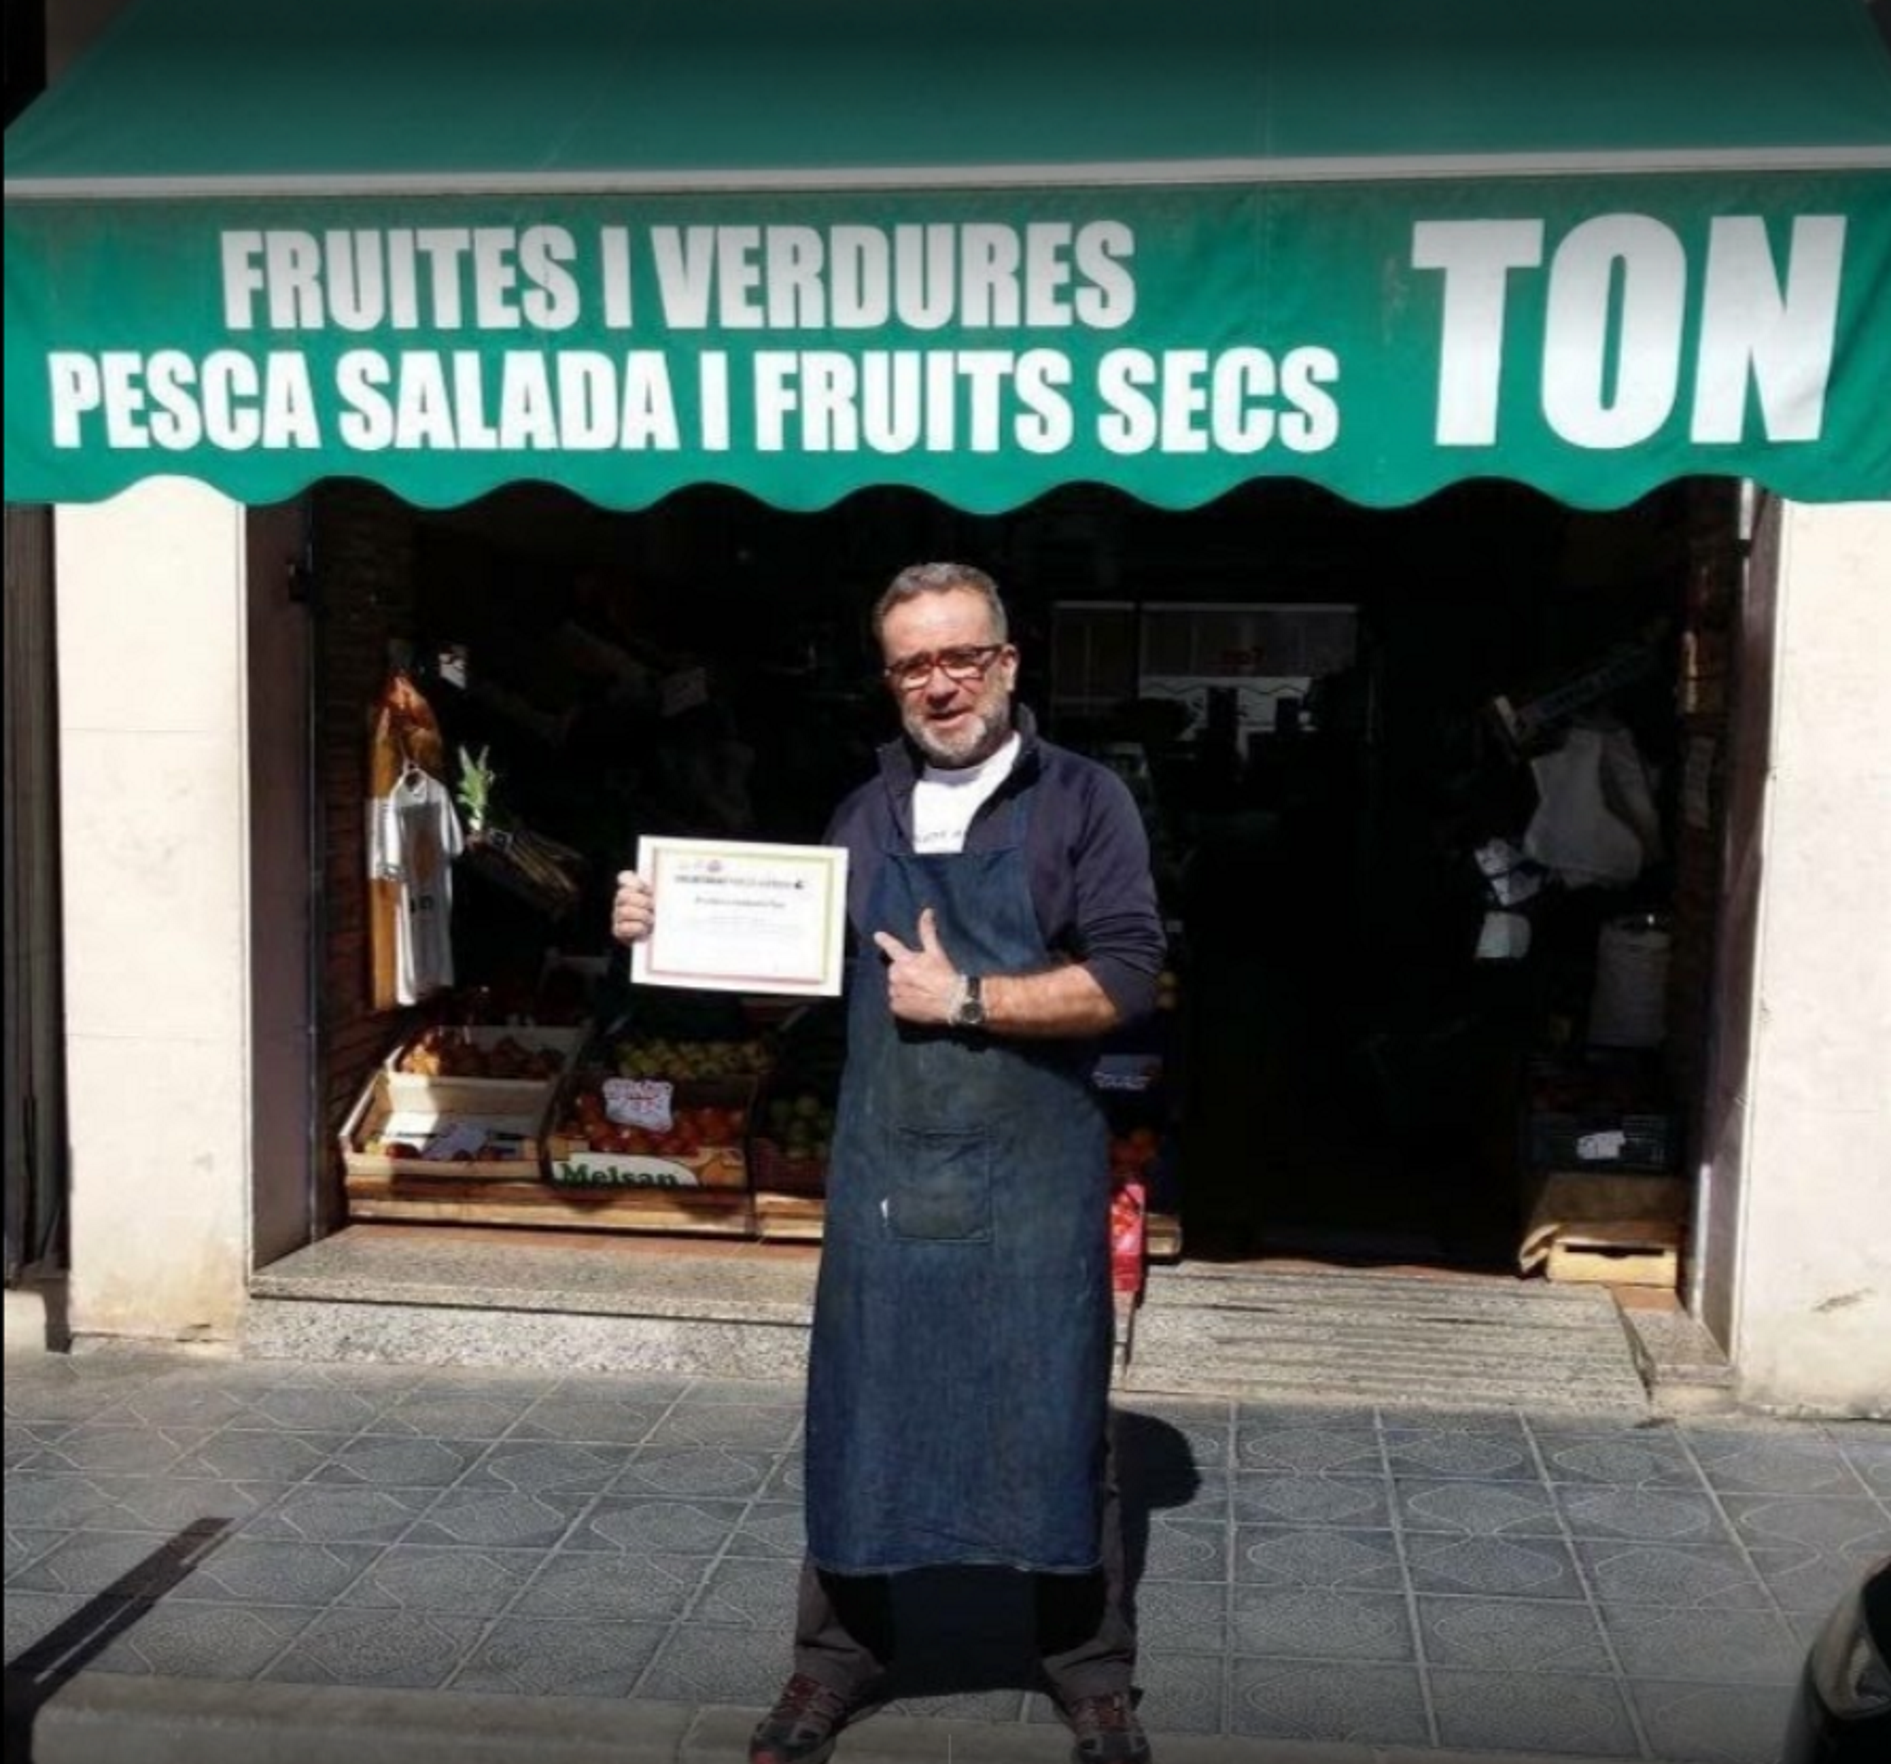 Boicotean a un frutero de Tarragona por llevar el lazo amarillo, y triplica ventas